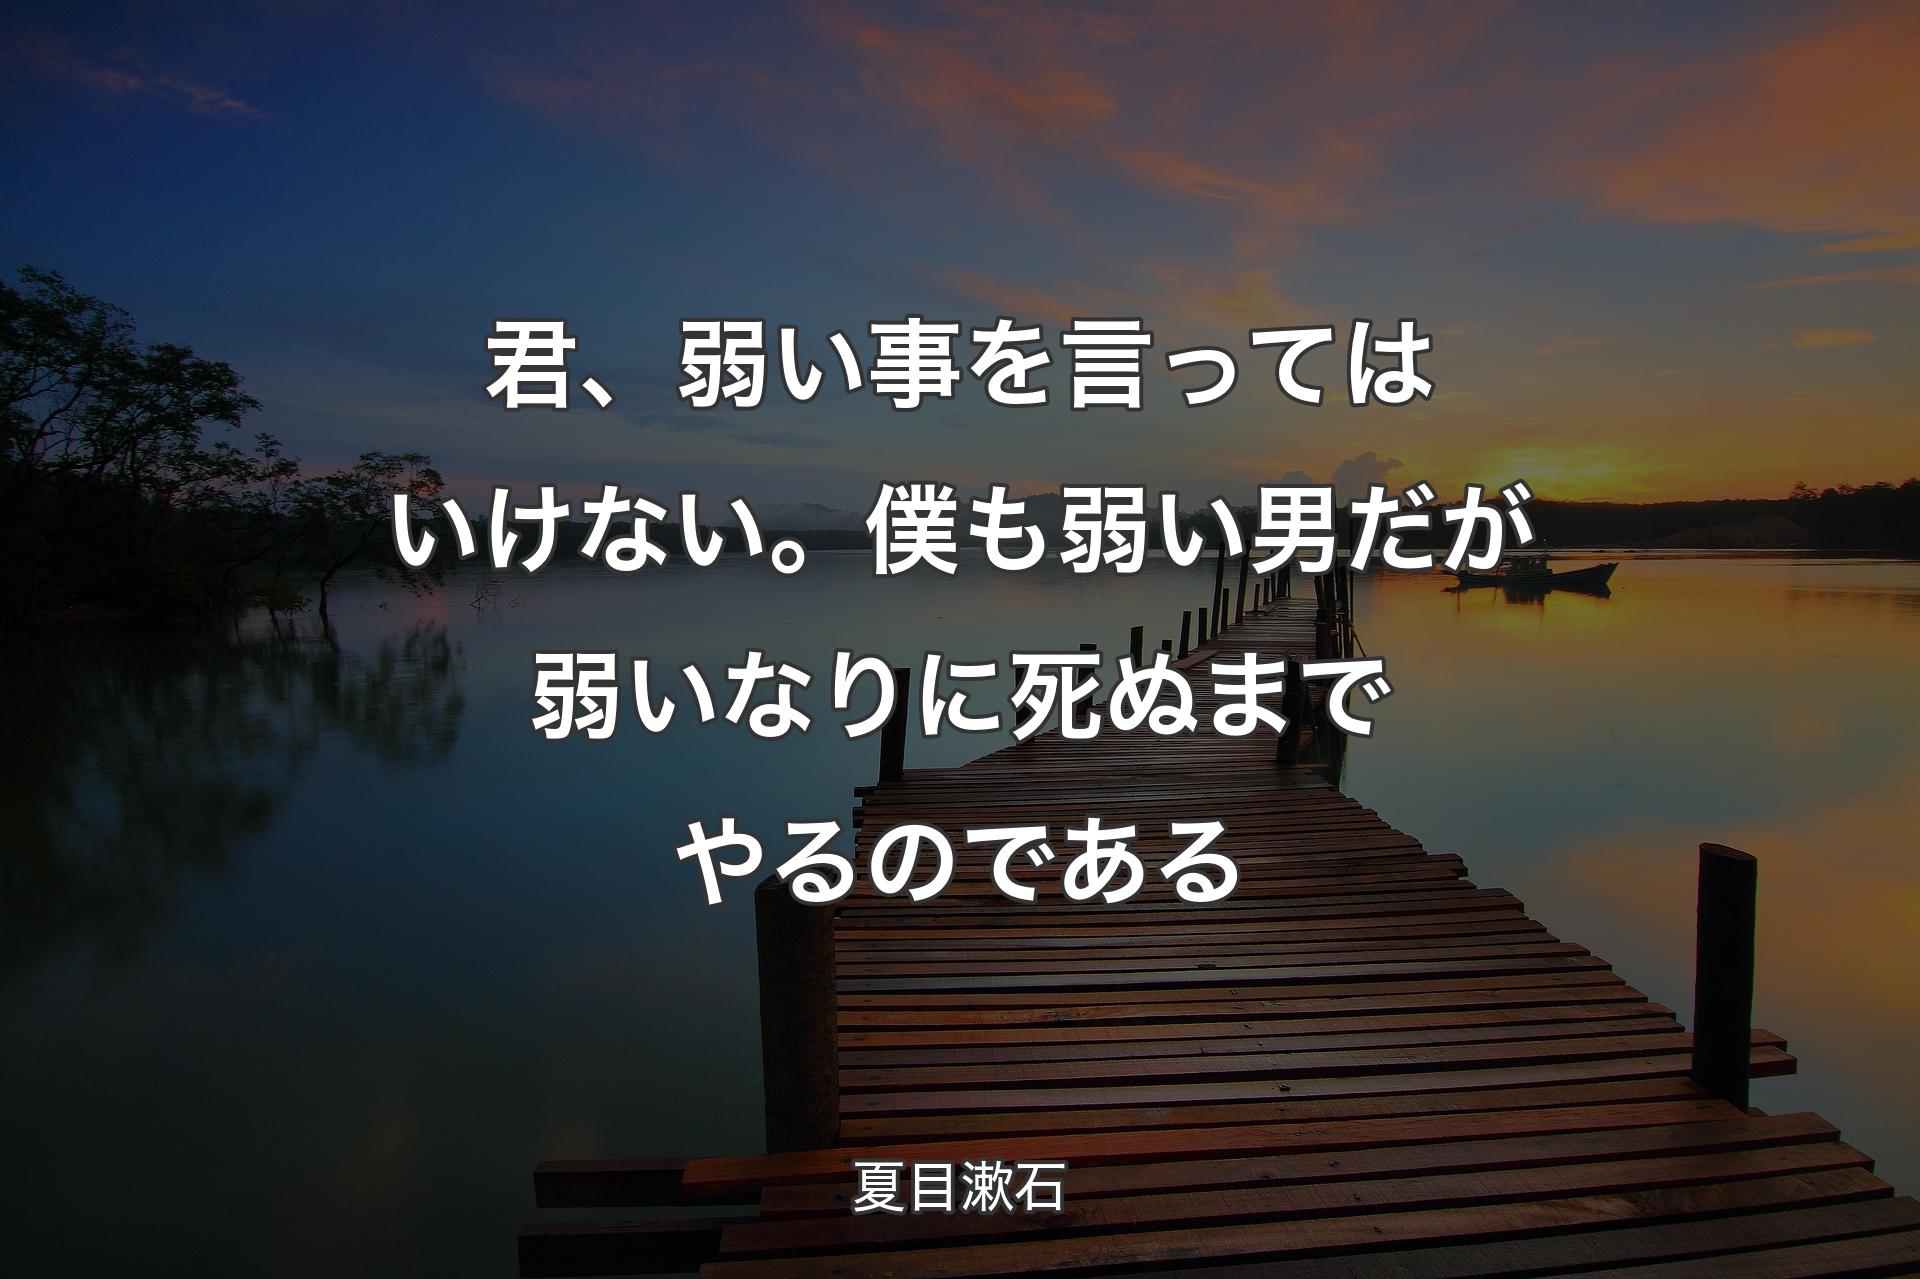 【背景3】君、弱い事を言ってはいけない。僕も弱い男だが弱いなりに死ぬまでやるのである - 夏目漱石